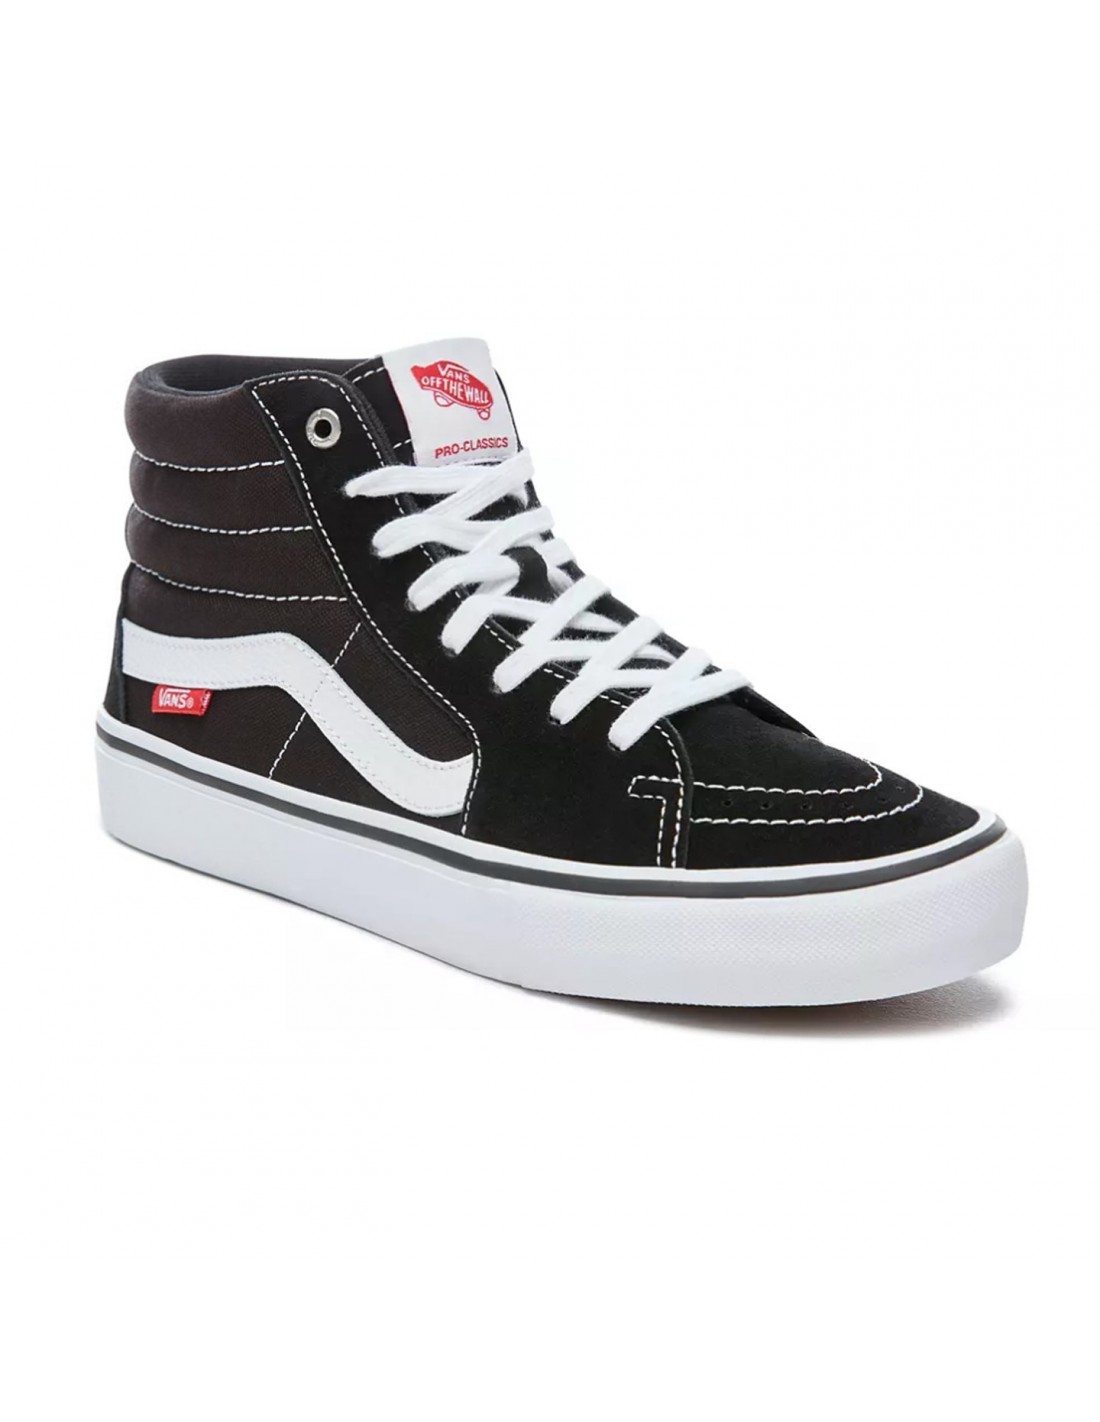 Vans Sk8-Hi Pro Black White - Skate Shoes